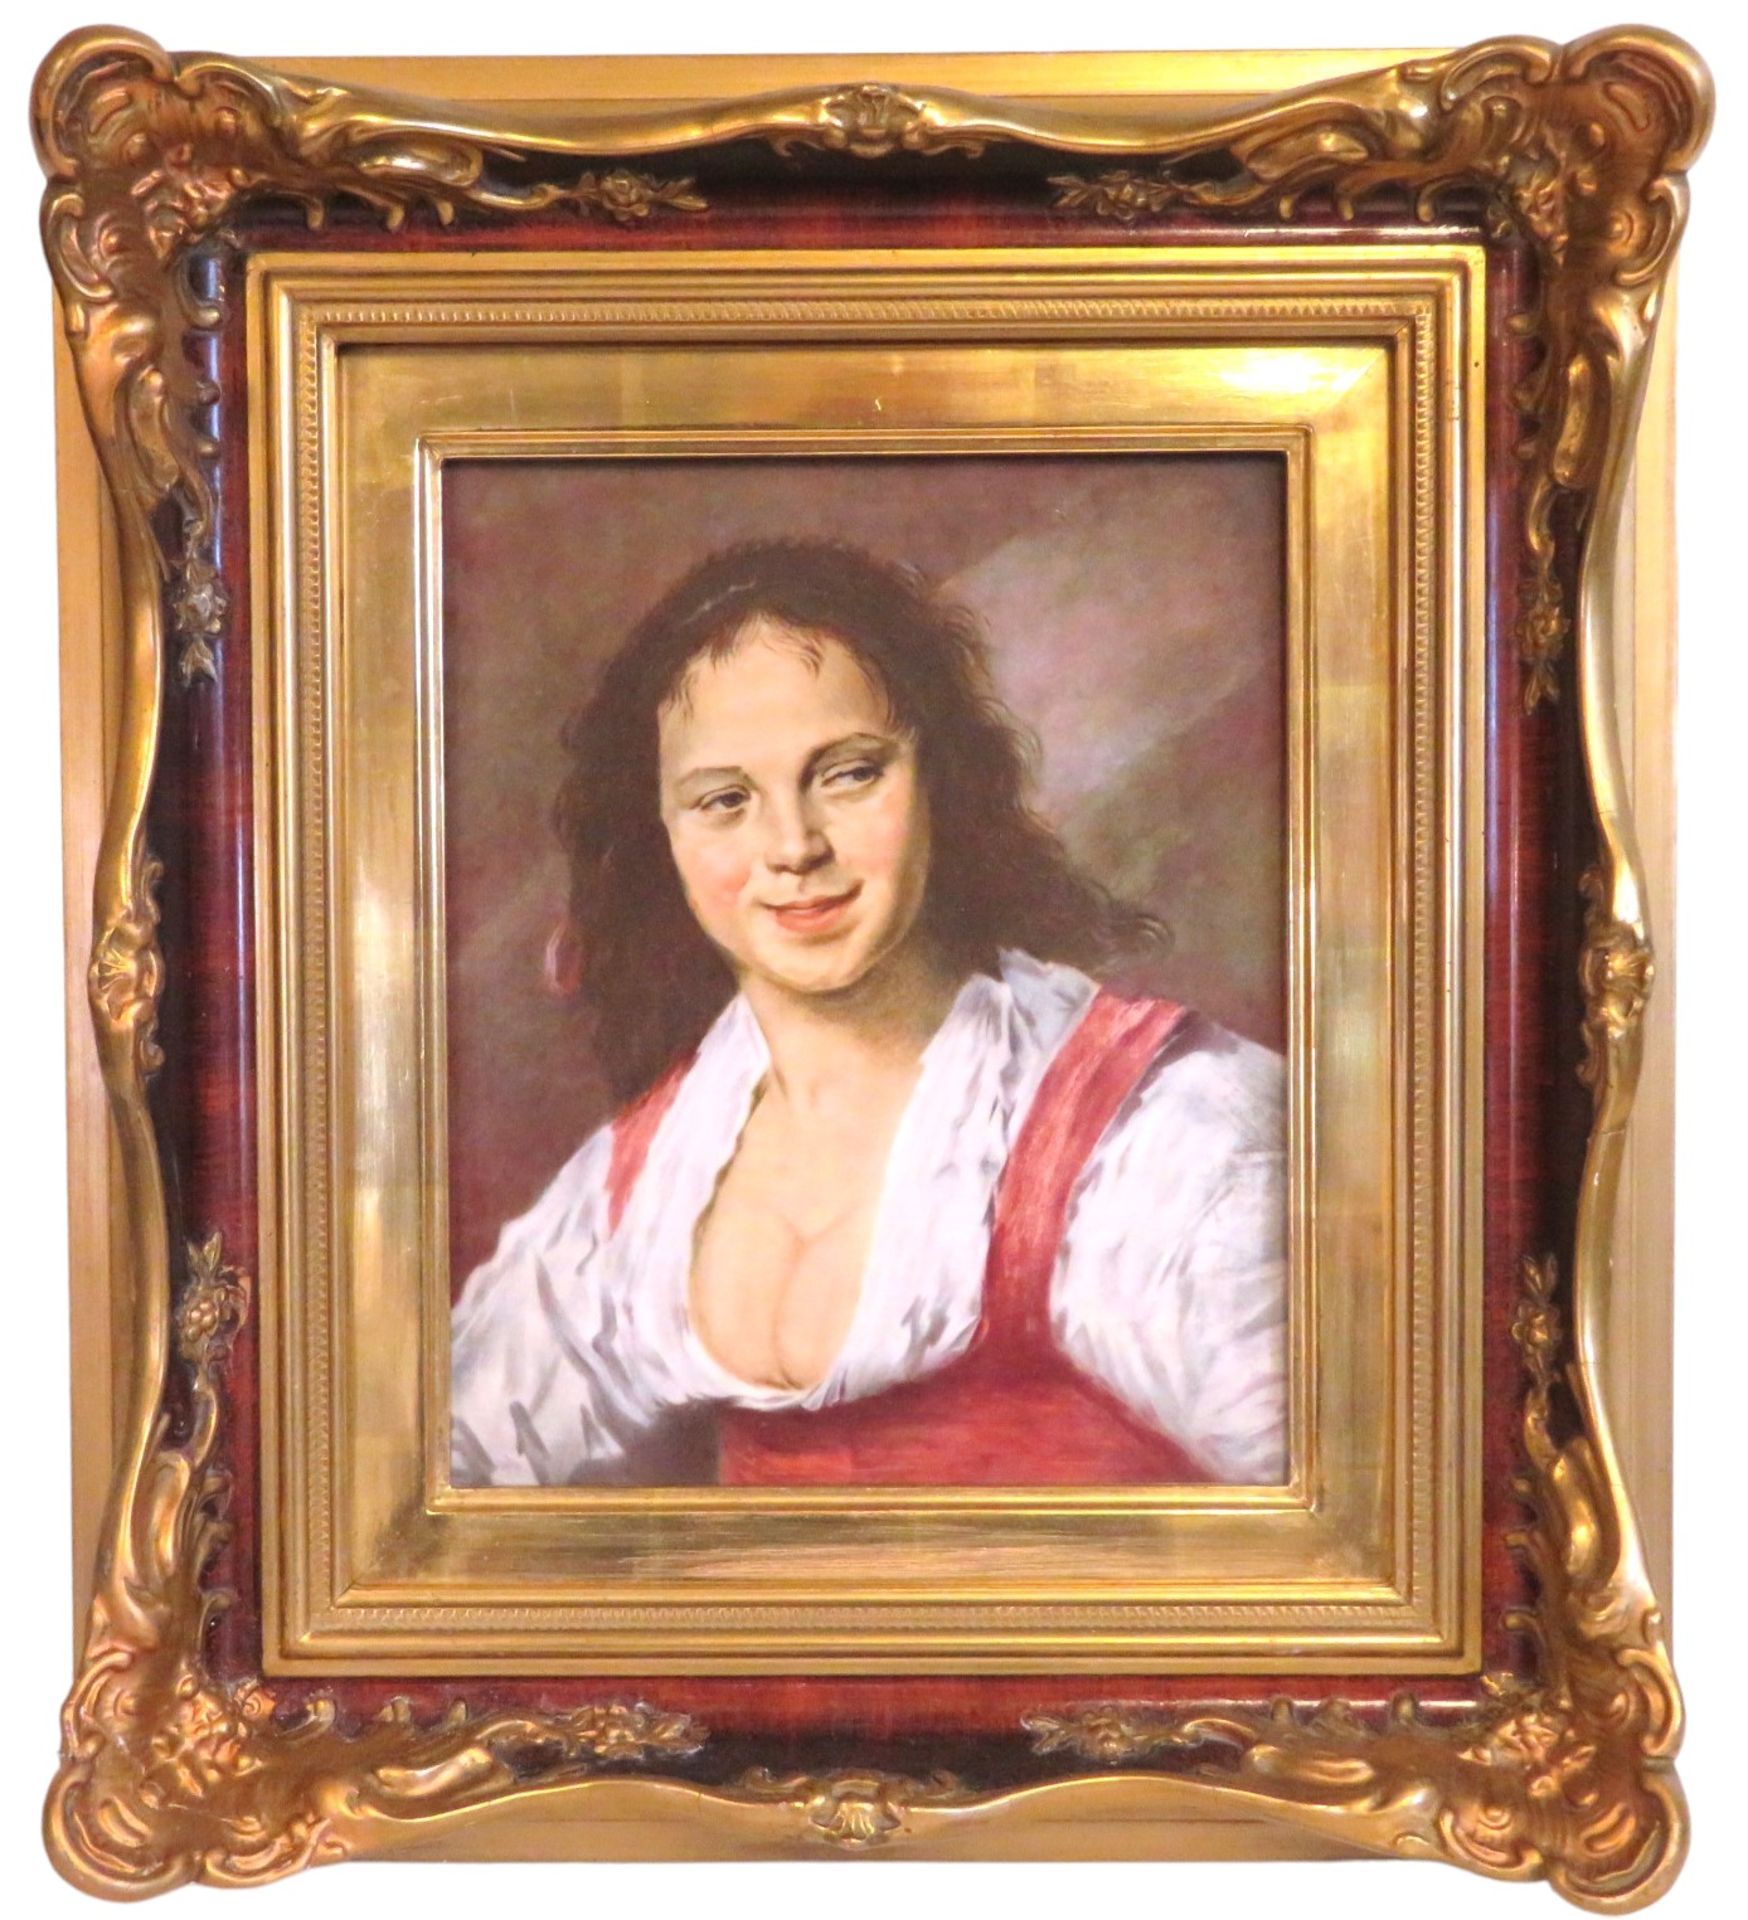 Porzellanmalerei, Rosenthal, Zigeunermädchen von Frans Hals, 30,5 x 25,5 cm, R. [53 x 46 cm] - Image 2 of 3